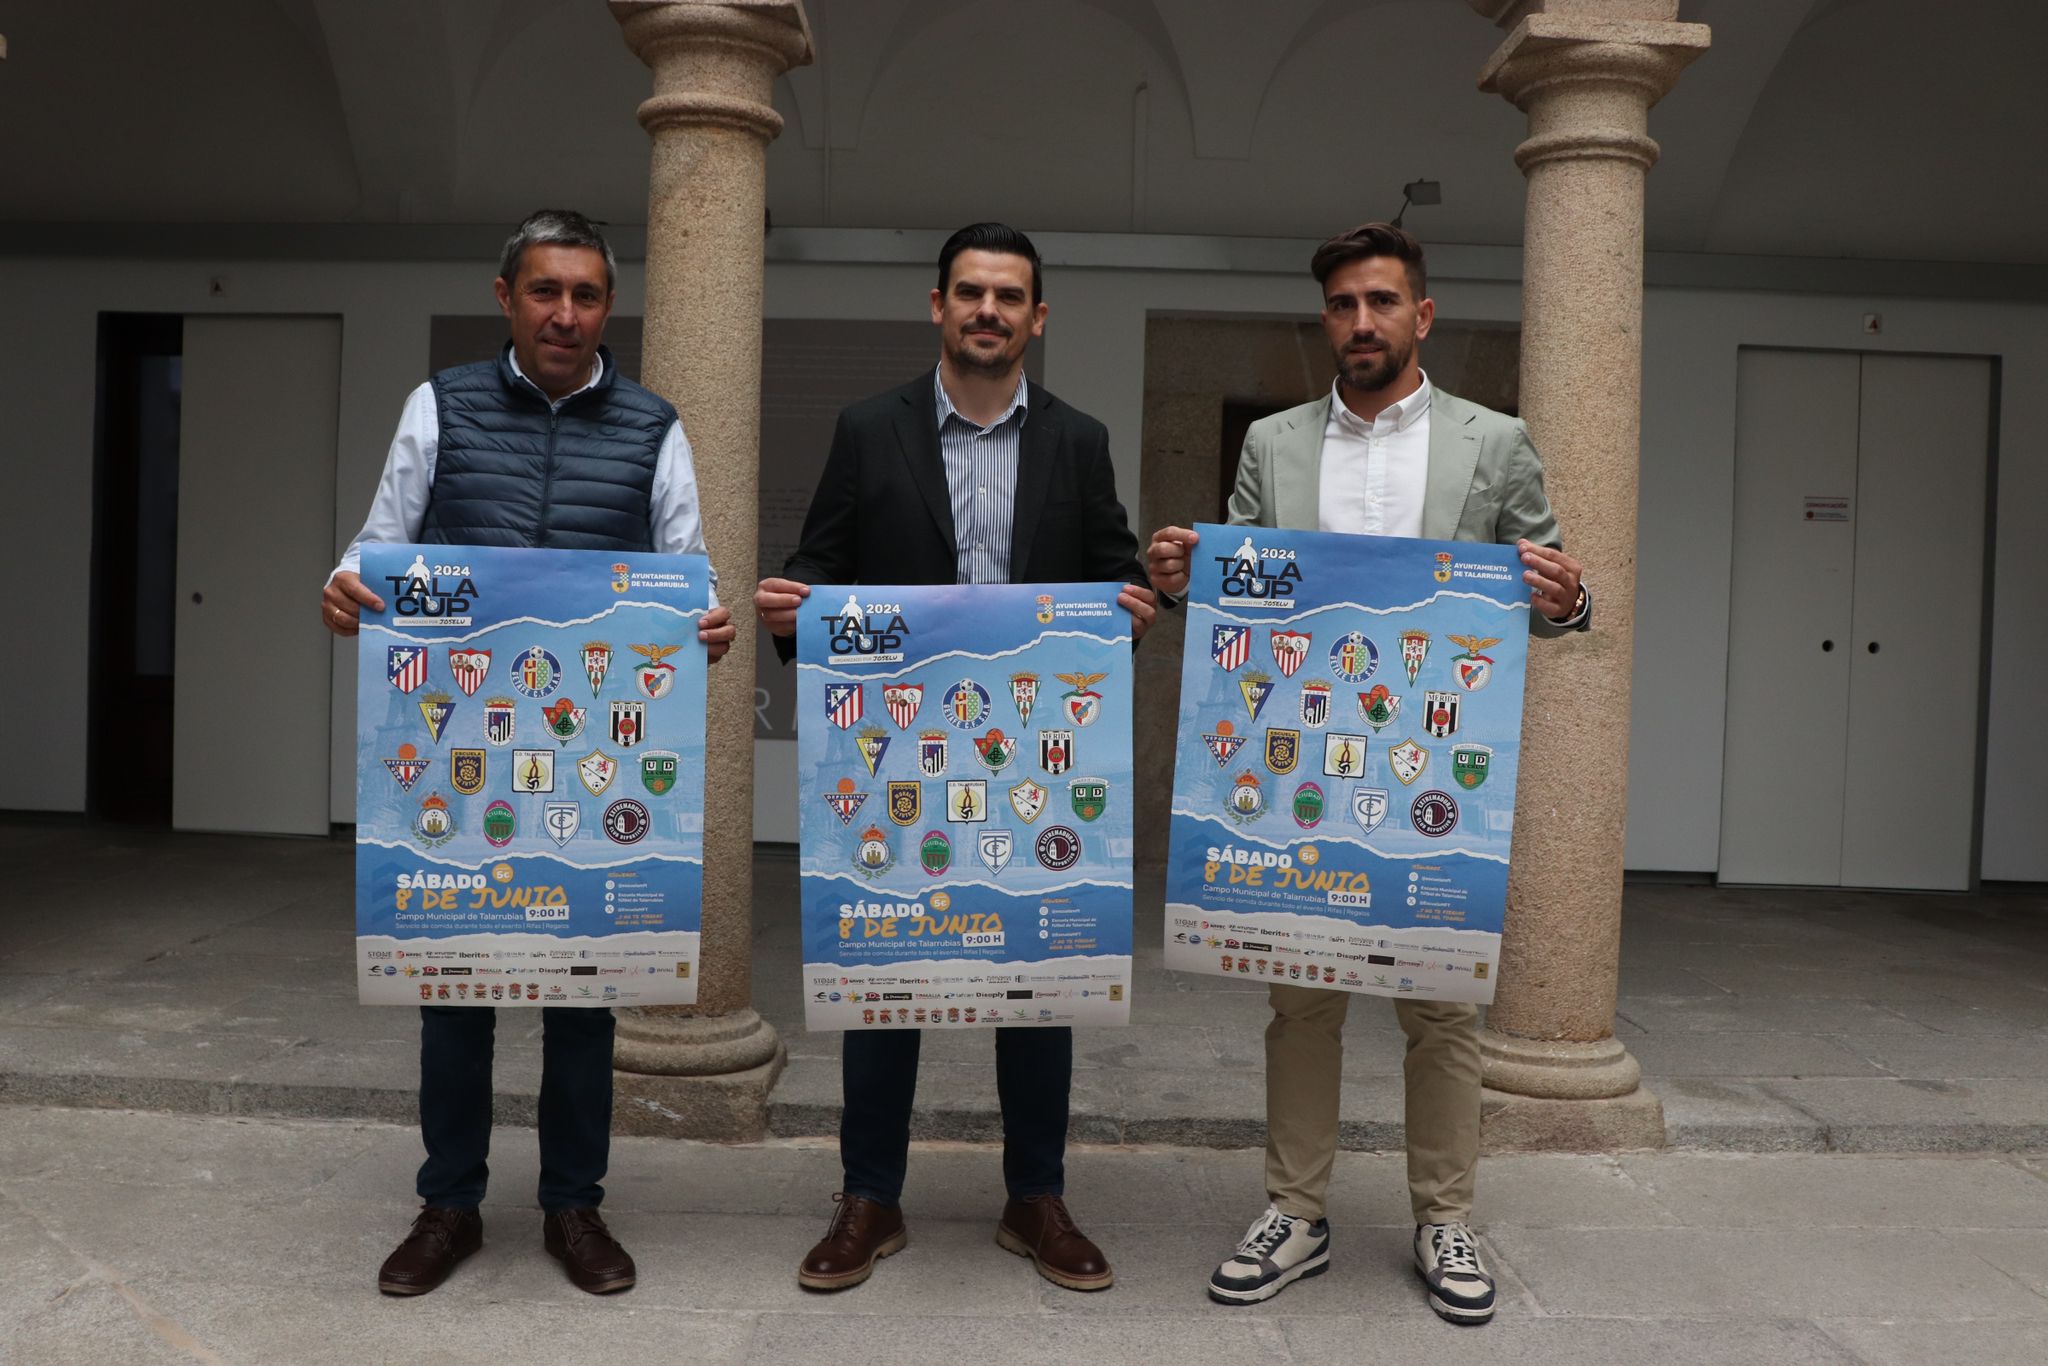 Image 6 of article Unos 800 menores participarán en Extremadura en la tercera edición del torneo de fútbol base Tala Cup